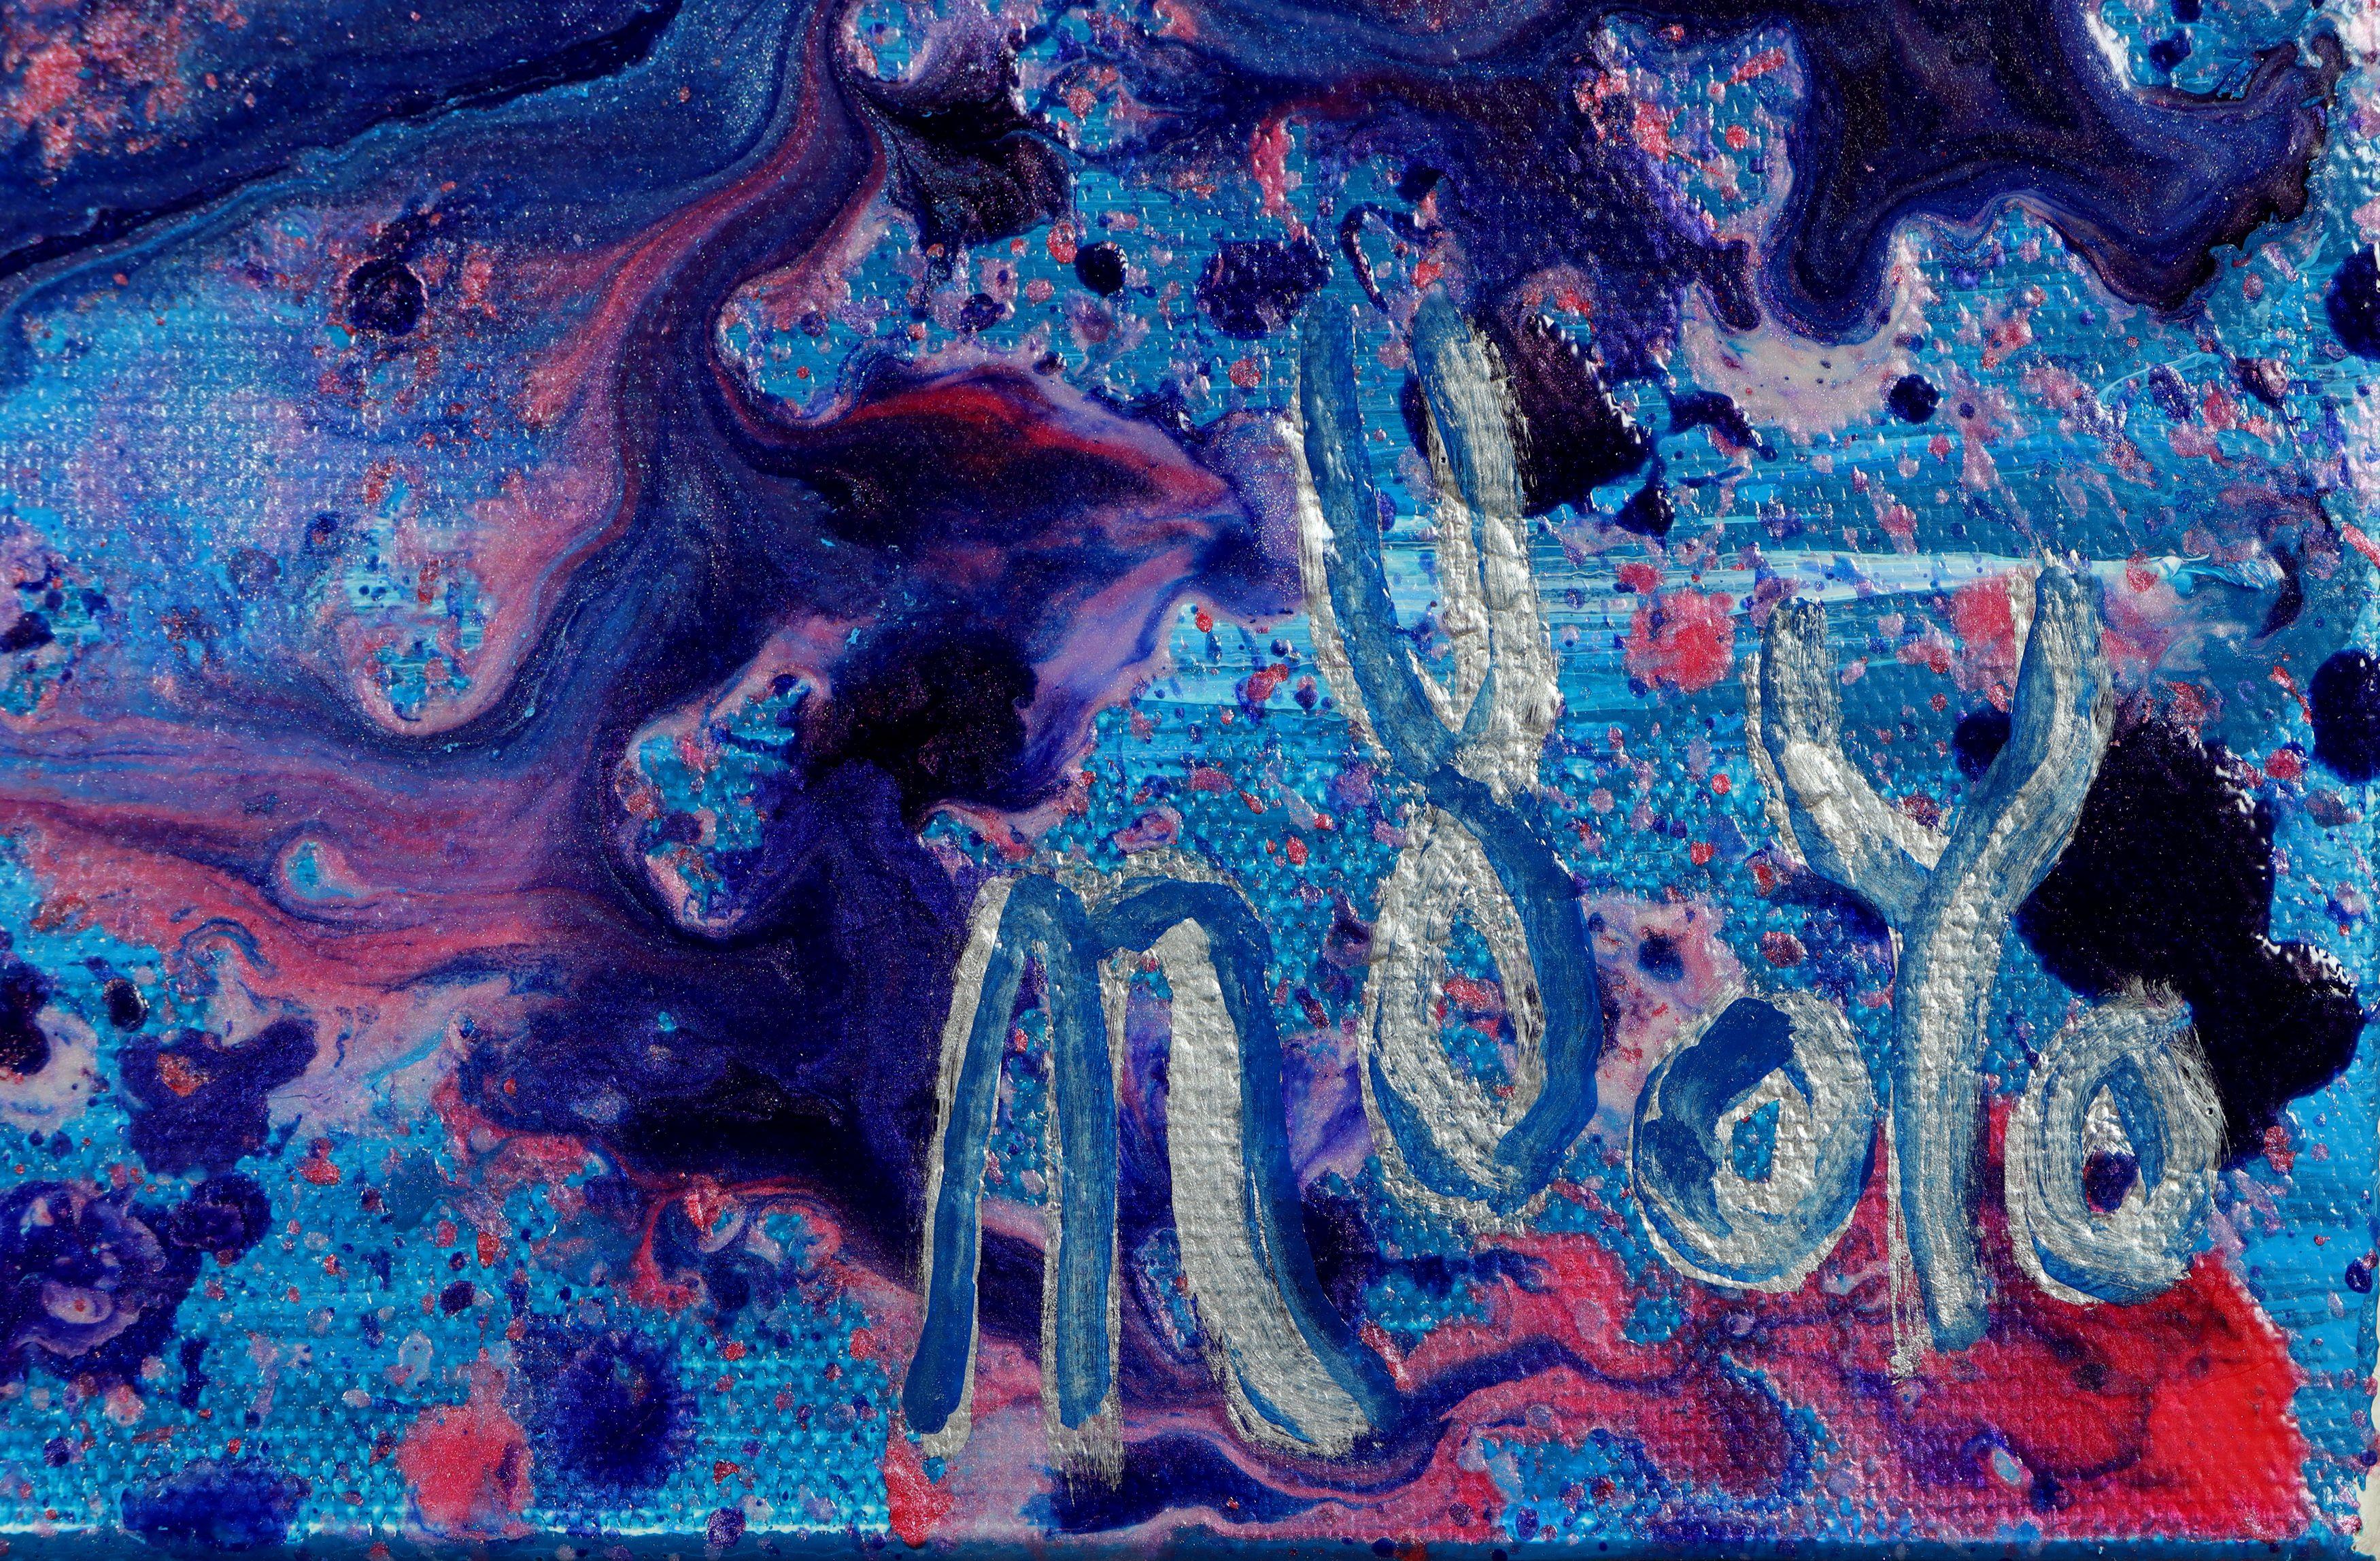 Leidenschaftliche abstrakte expressionistische Aktionsmalerei, inspiriert von Pollock. Farbschichten, Lila, schillerndes Lila, Preußischblau und Silber. Großes Statement-Kunstwerk. Signiert auf der Vorderseite der zweiten Leinwand.    Dieses